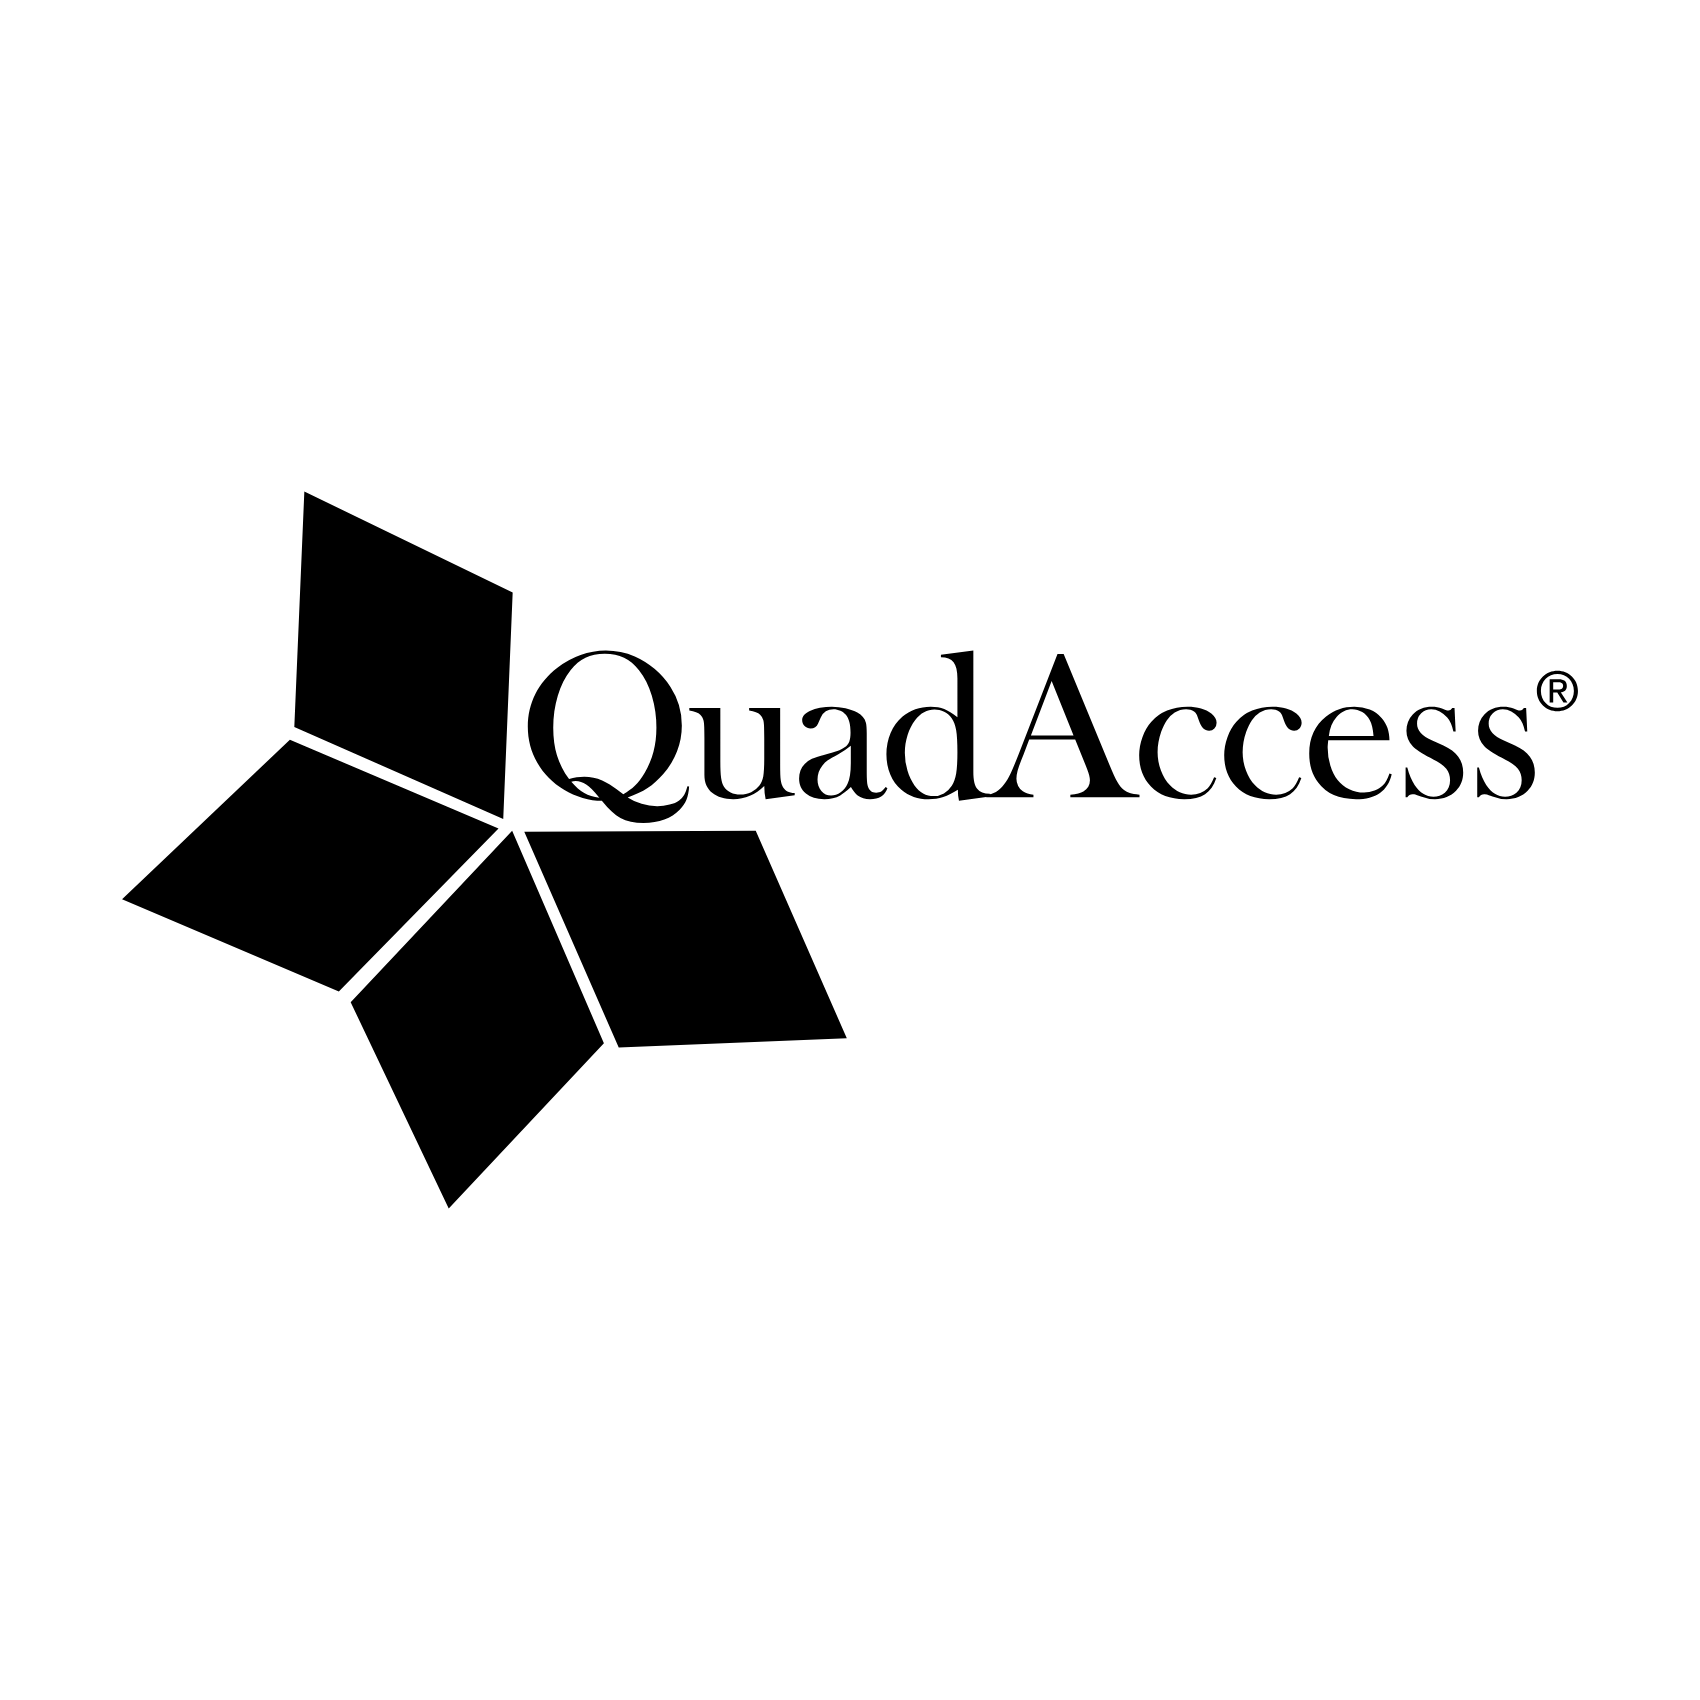 QuadAccess